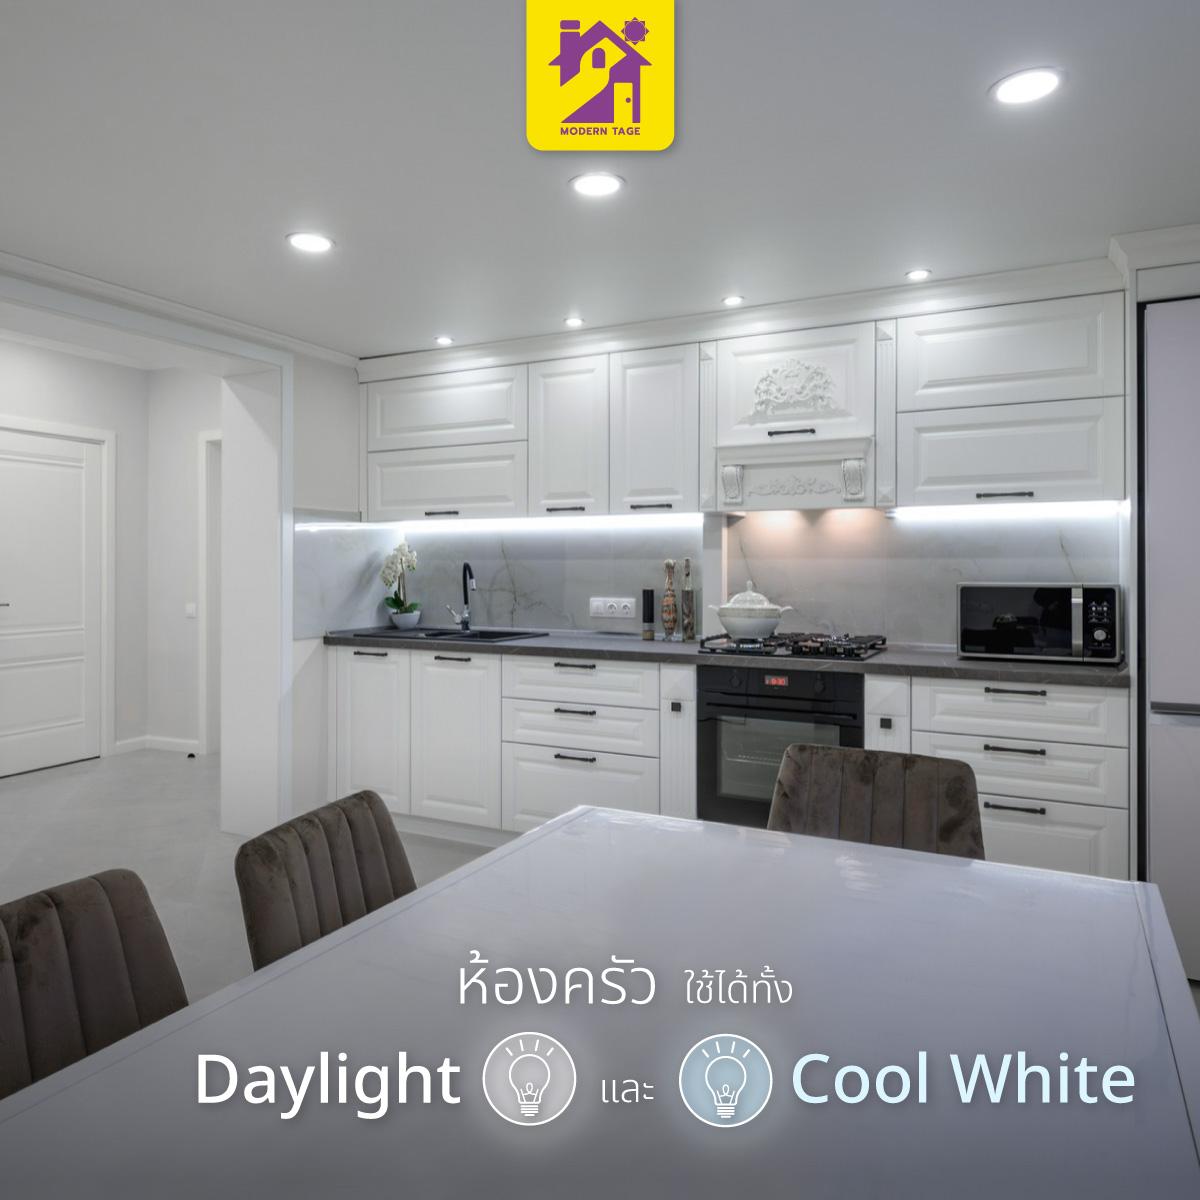 ห้องครัว Daylight และ Cool White